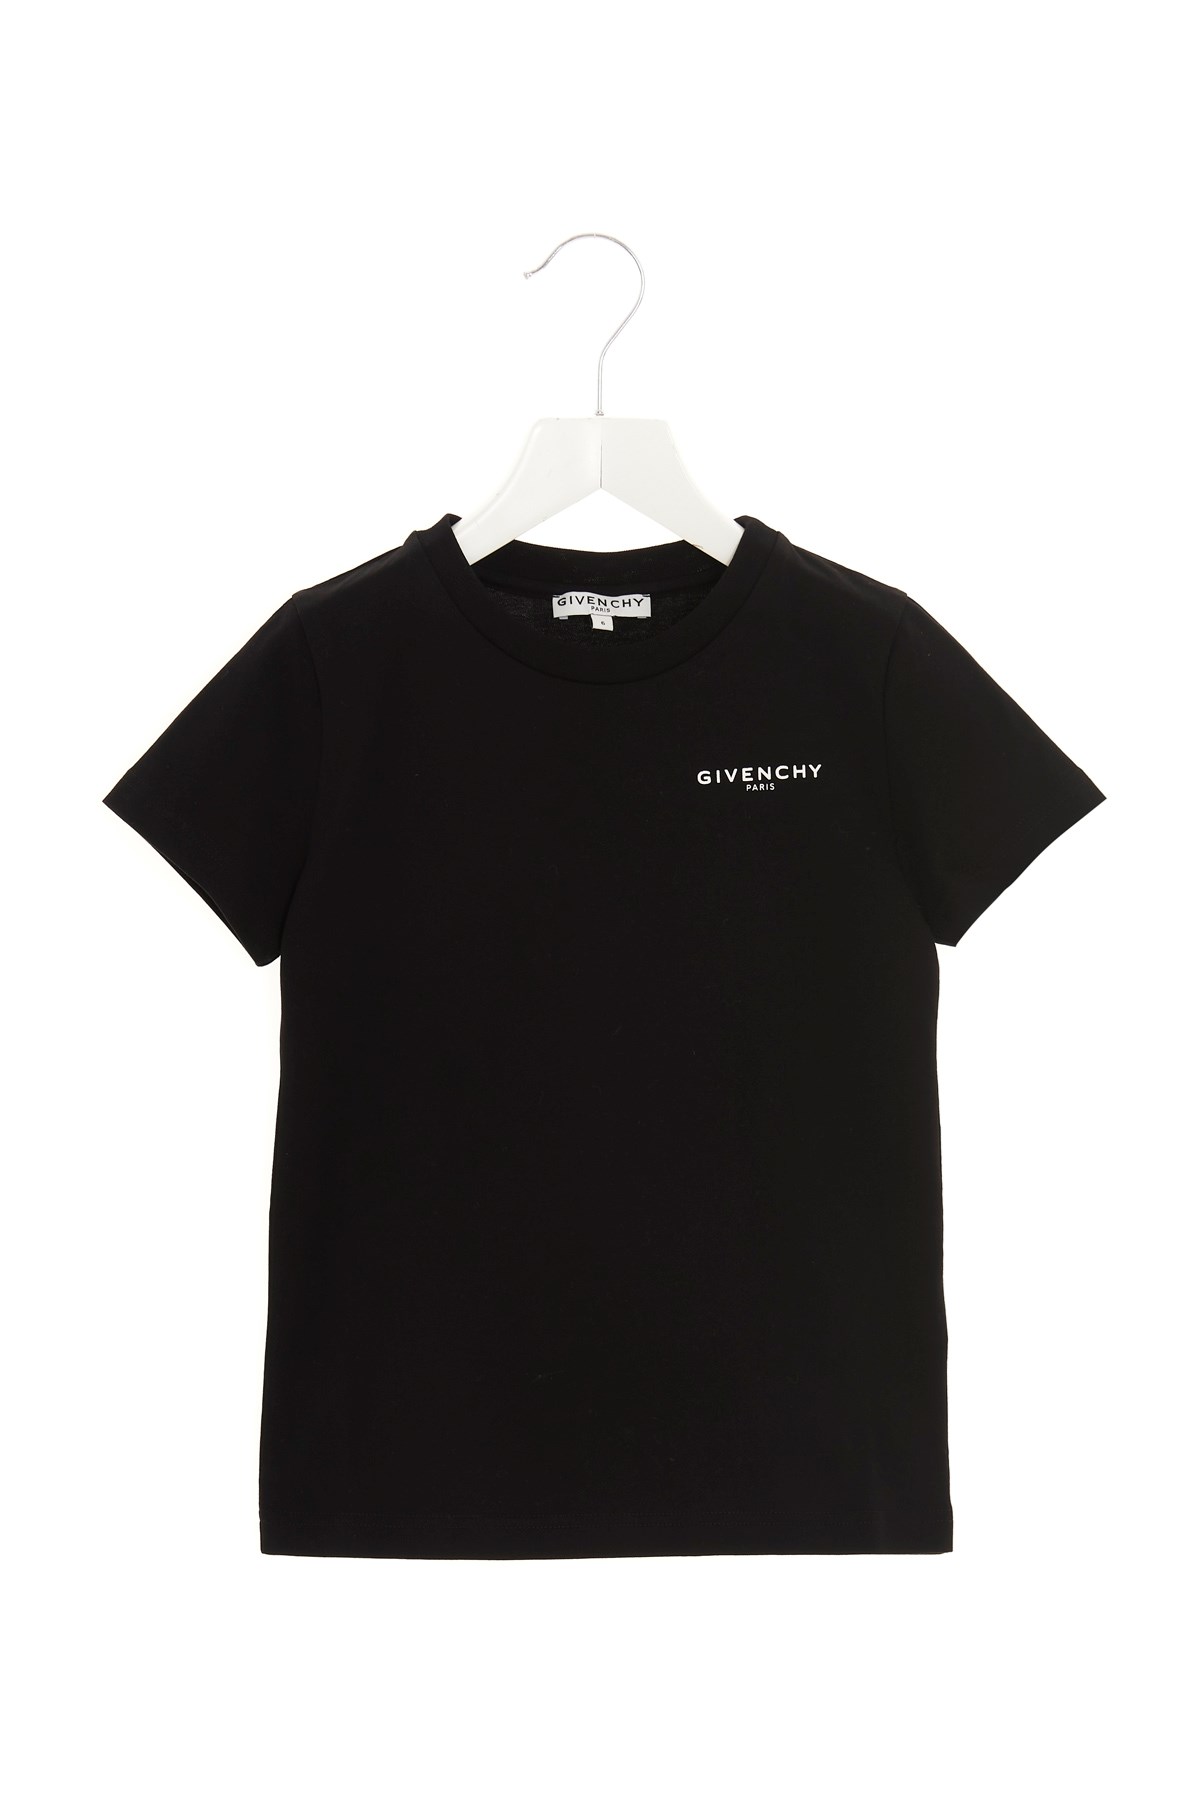 GIVENCHY T-Shirt Mit 'Givenchy'-Print